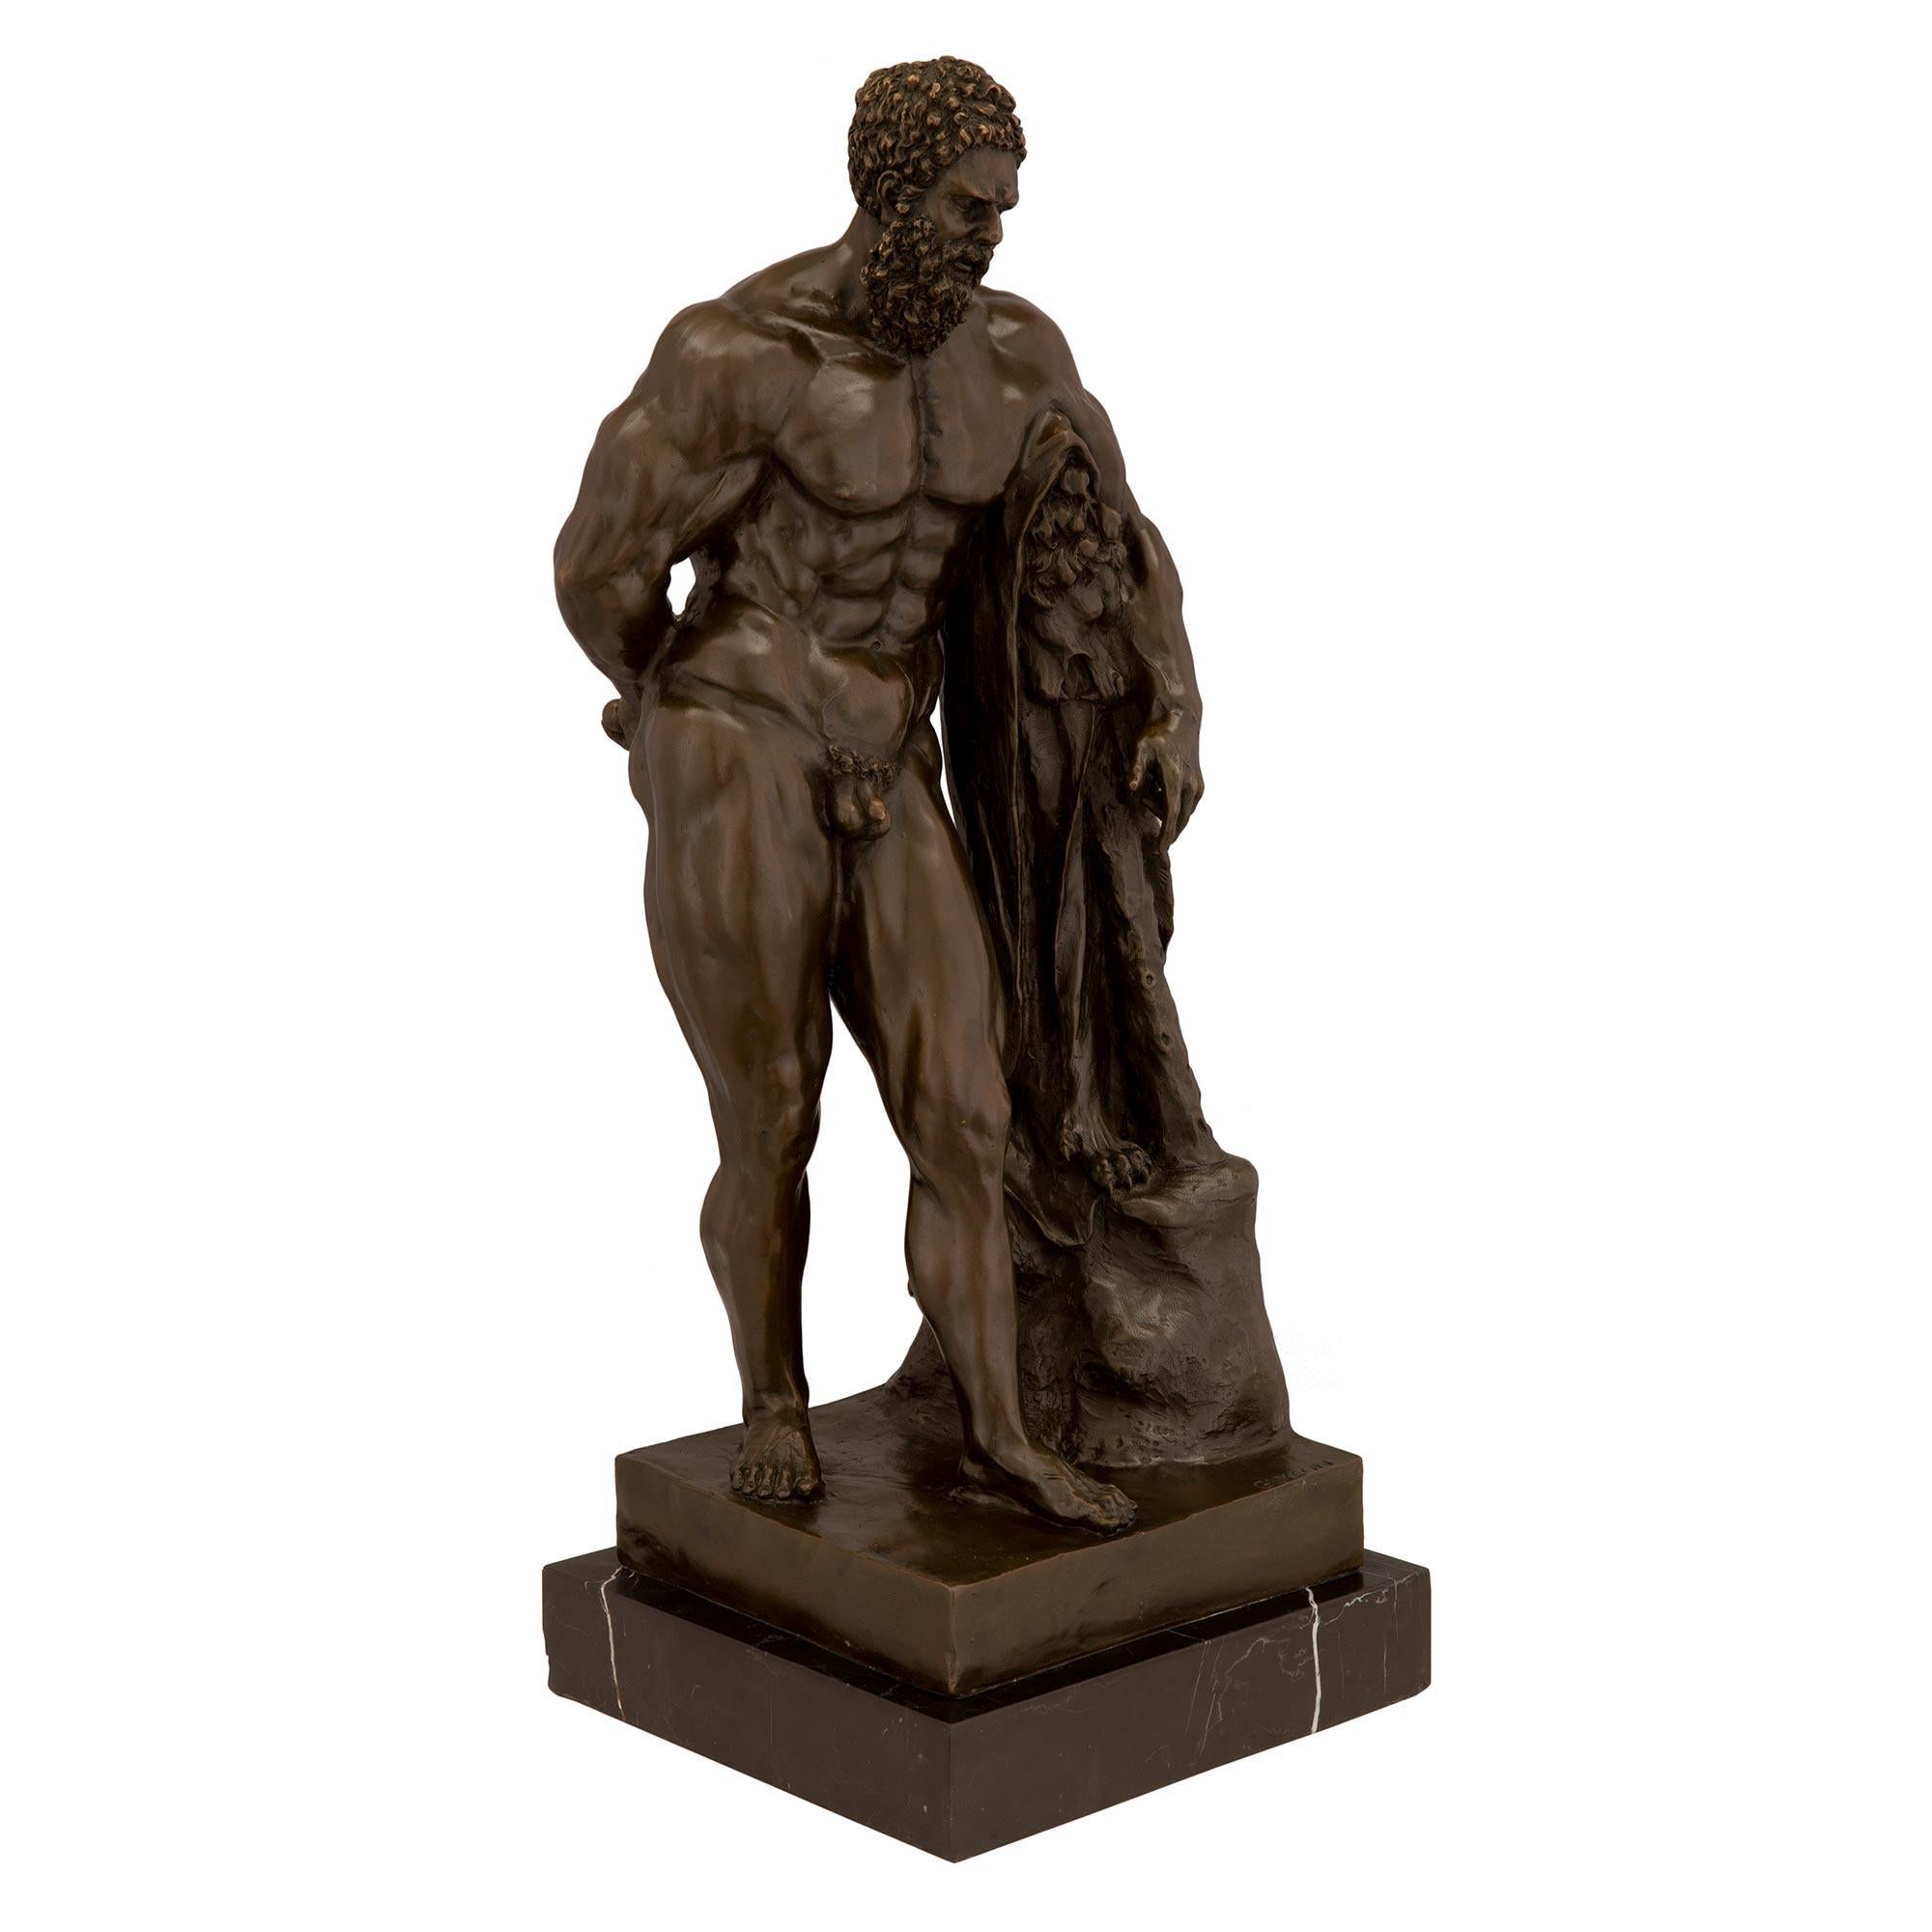 Eine beeindruckende patinierte Bronzestatue des Herkules. Die Statue wird von einem quadratischen Sockel aus schwarzem, antikem Marmor getragen. Oben ist der hübsche patinierte Bronze-Herkules zu sehen, der sich auf das Fell des nemeischen Löwen